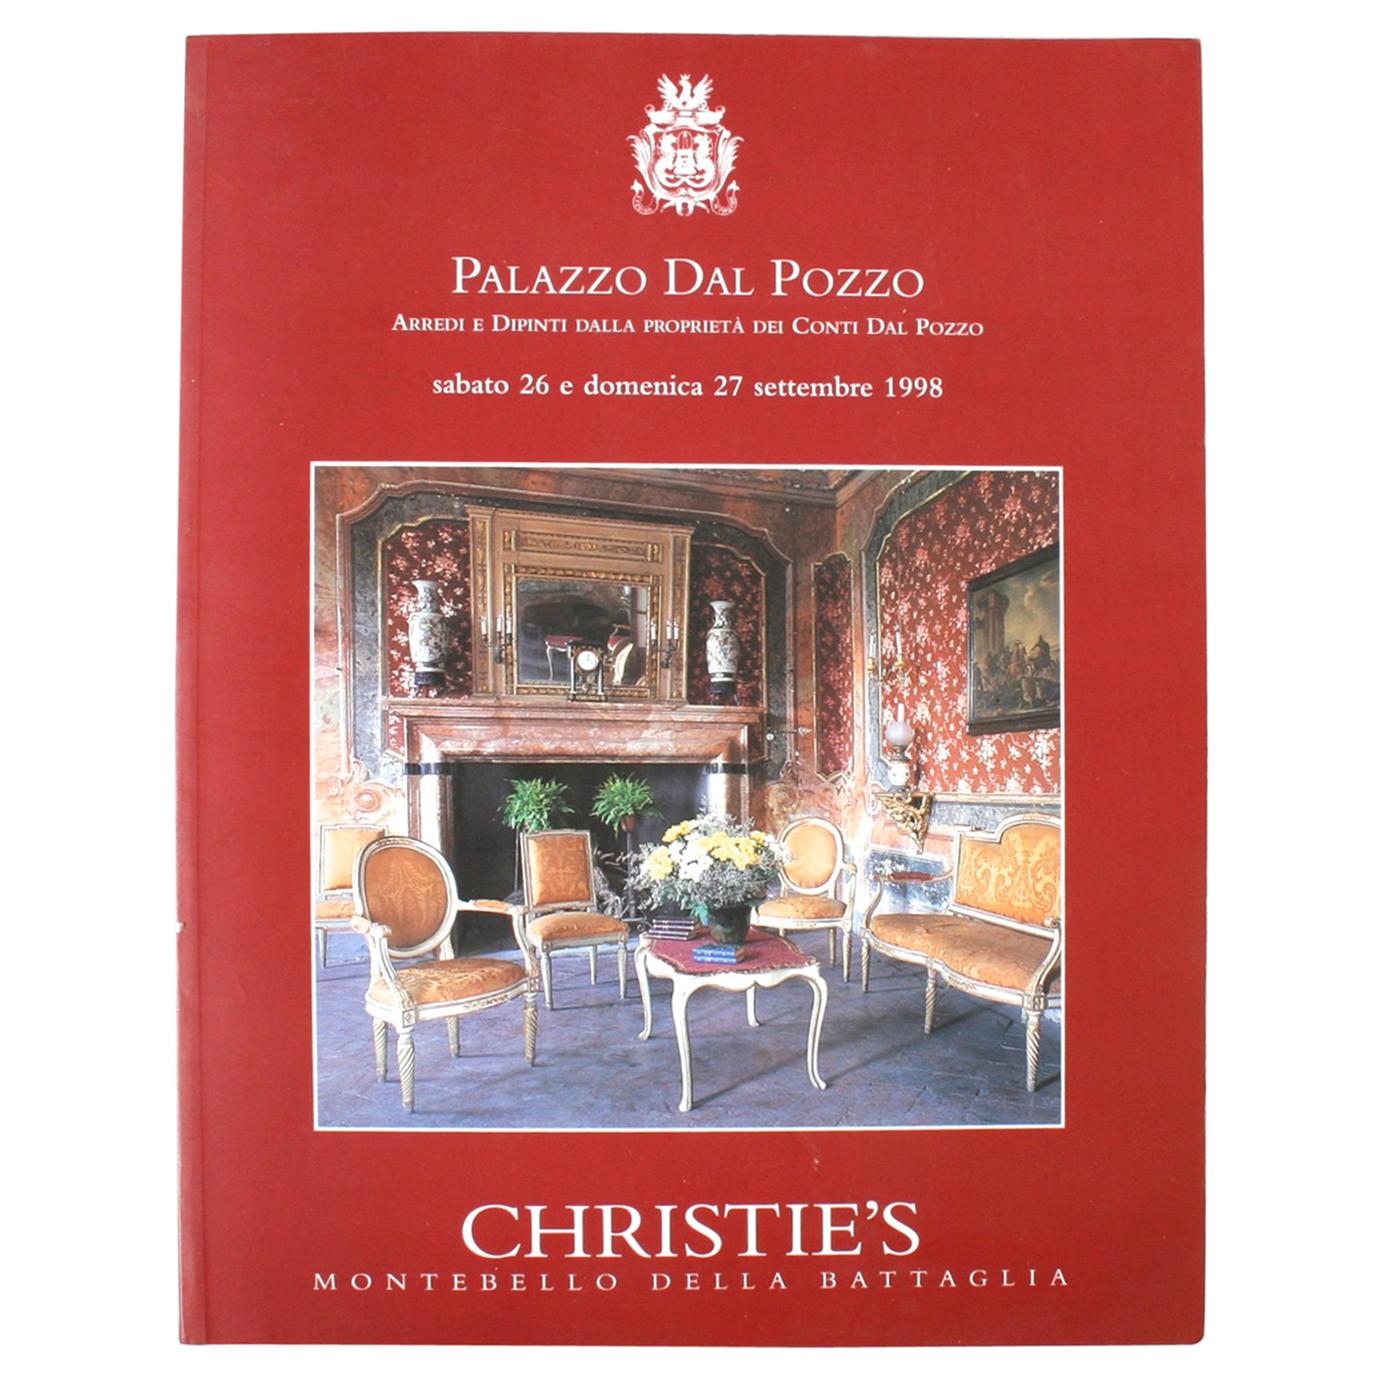 Christie's: Palazzo Dal Pozzo Arredi e Dipinti Dalla, September 1998 For Sale